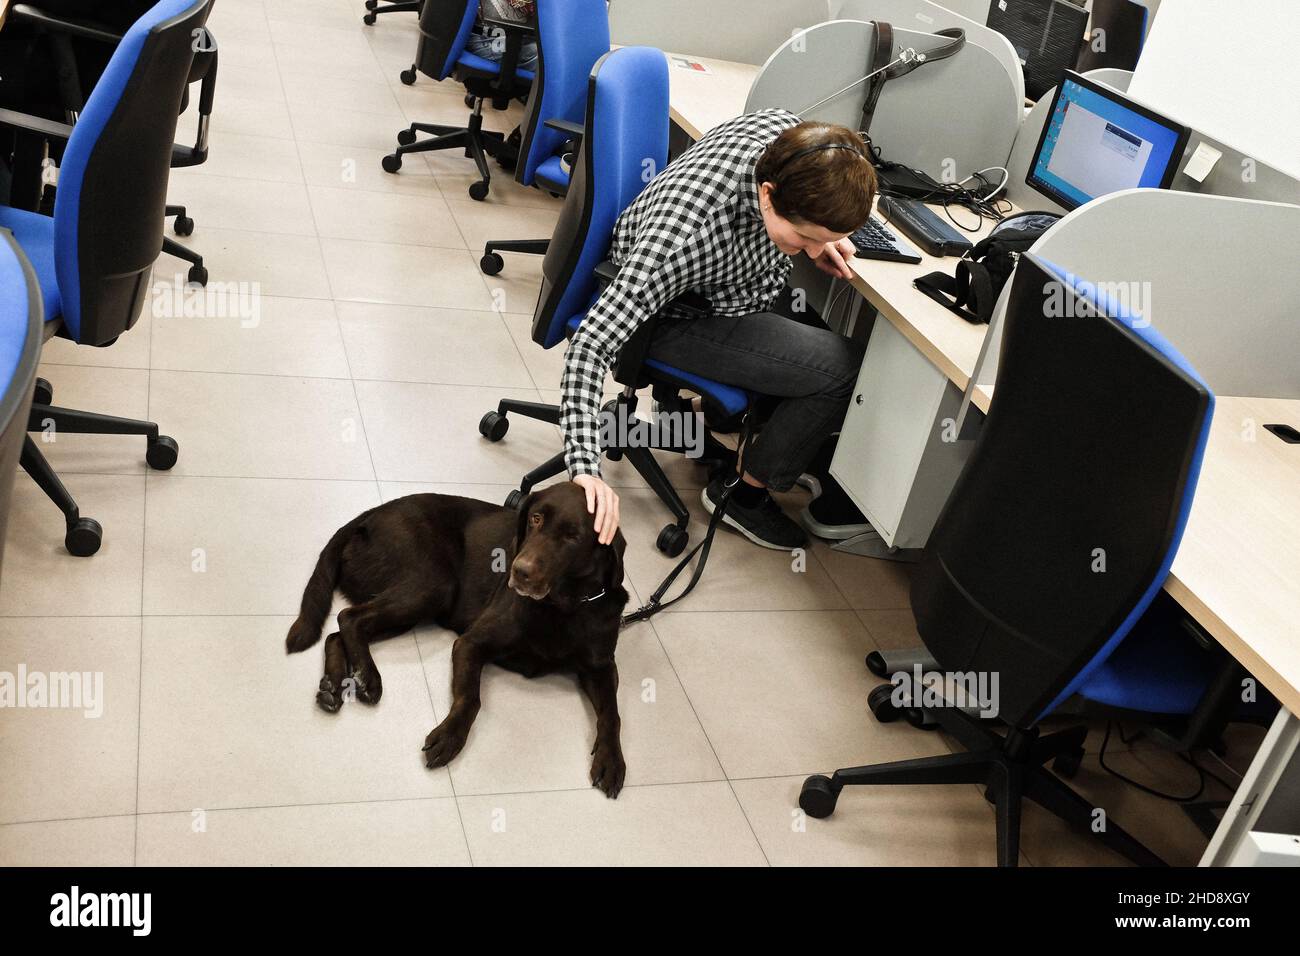 Ana Patricio Espejo, eine blinde Agentin, stetet zwischen den Anrufen ihren Blindenhund Camila. Ilunion Contact Center BPO, Madrid, Spanien. Stockfoto